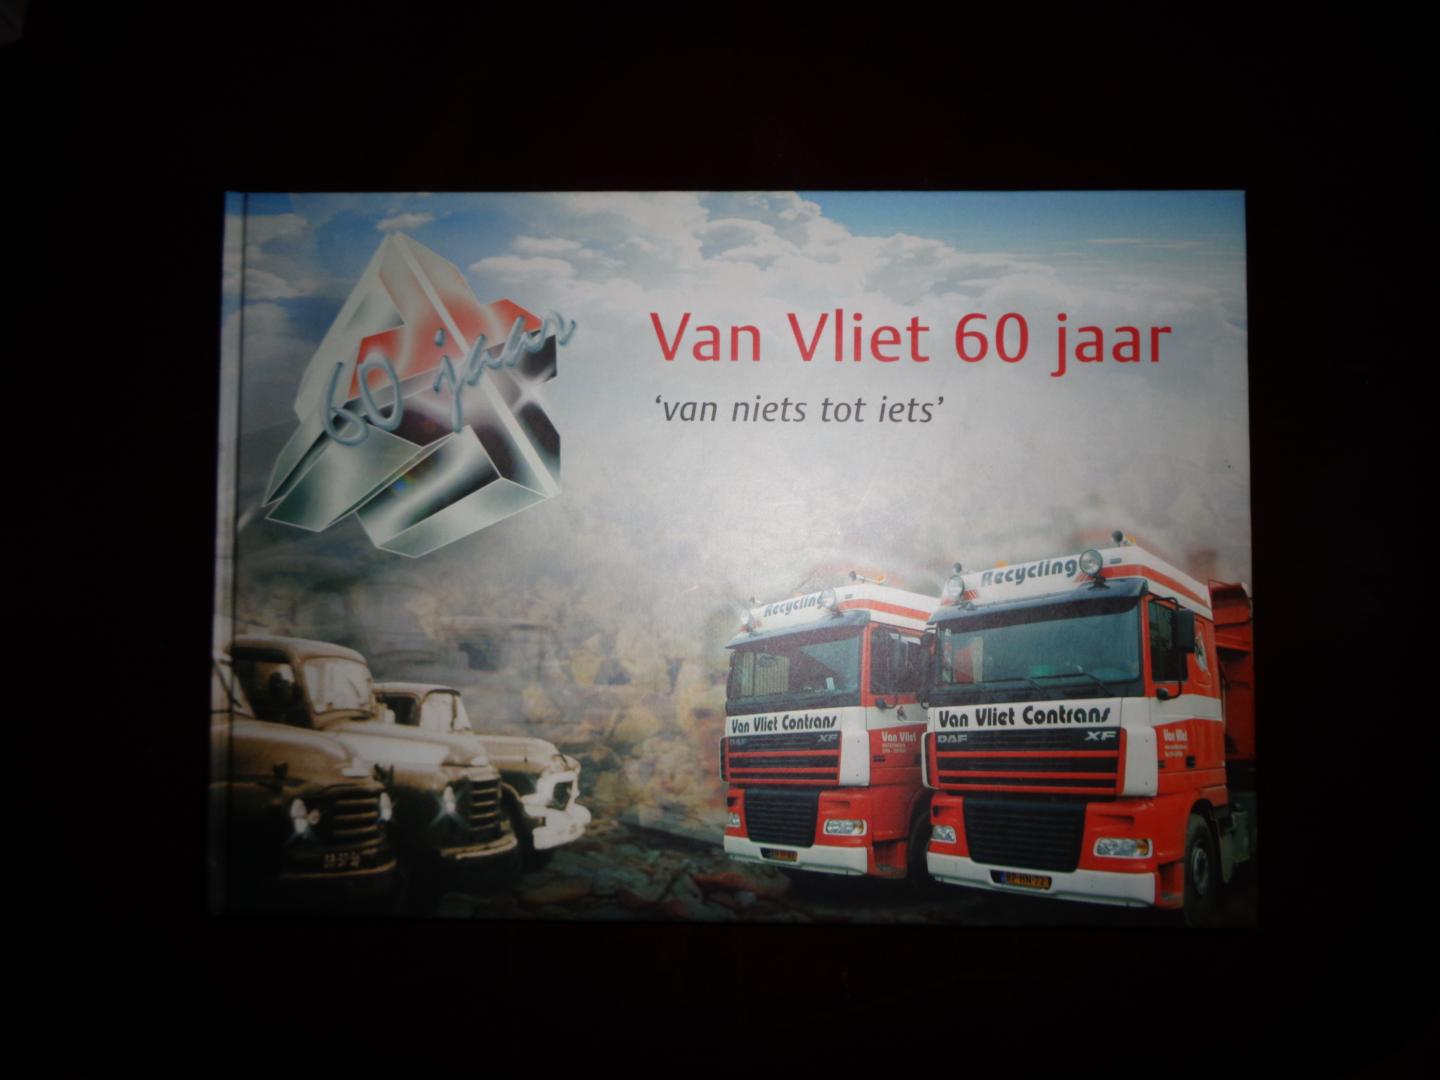 Smit , Peter / Marc van Buijtene / Quirien van Vliet ( eds.) - VAN VLIET 60 JAAR - " van niets tot iets " (Transportbedrijf Van Vliet BV / Van Vliet Contrans )